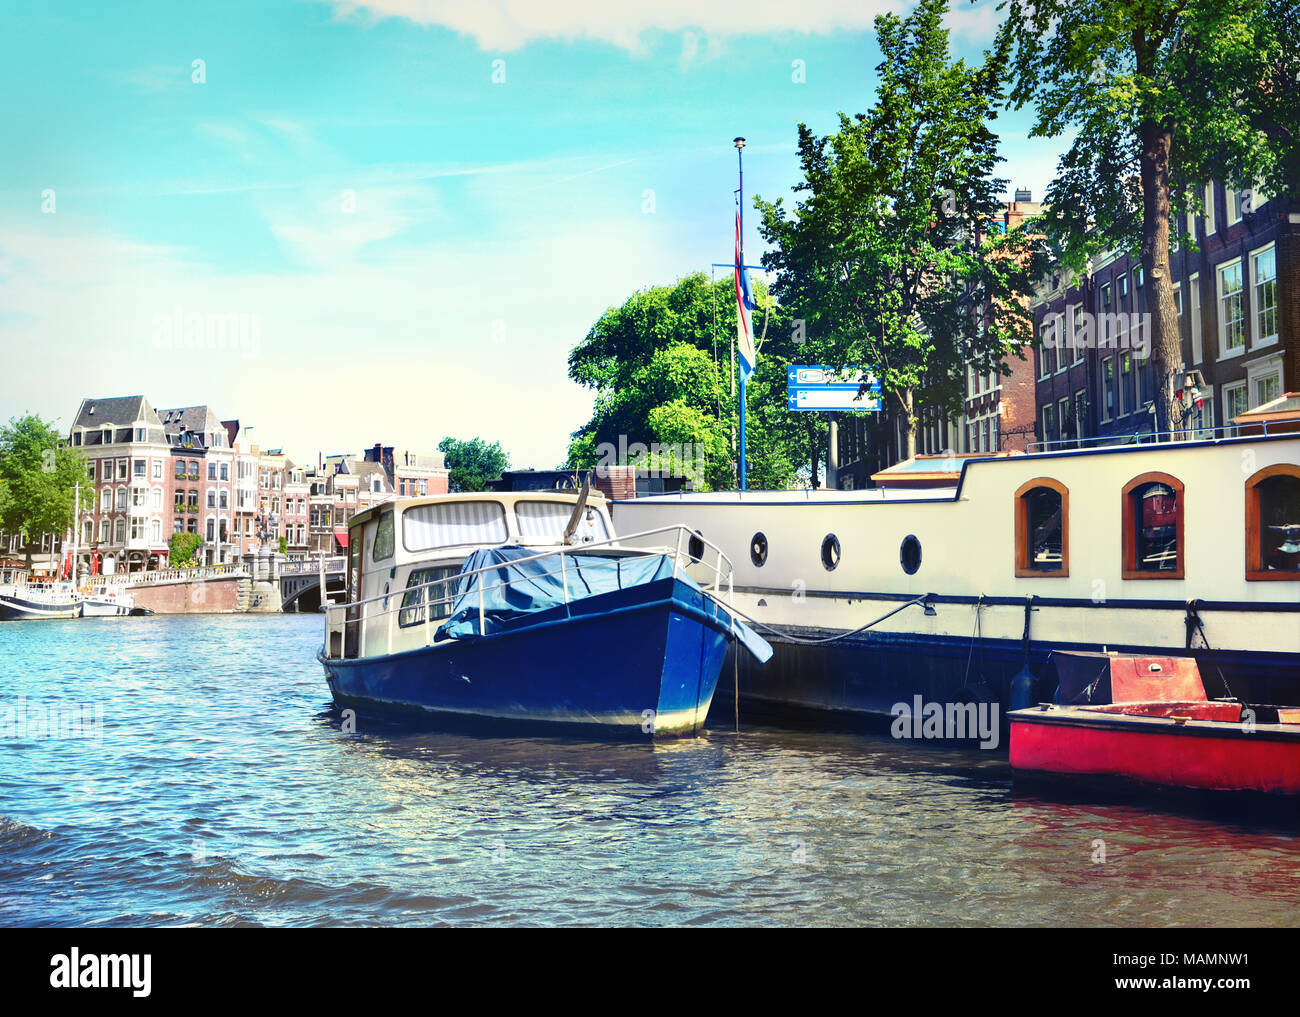 Kanal von Amsterdam mit dem niederländischen Häusern und Amstel. Im Frühling oder im Sommer zur Szene und das Stadtbild von Amsterdam. Historische Stadthäuser. Stockfoto